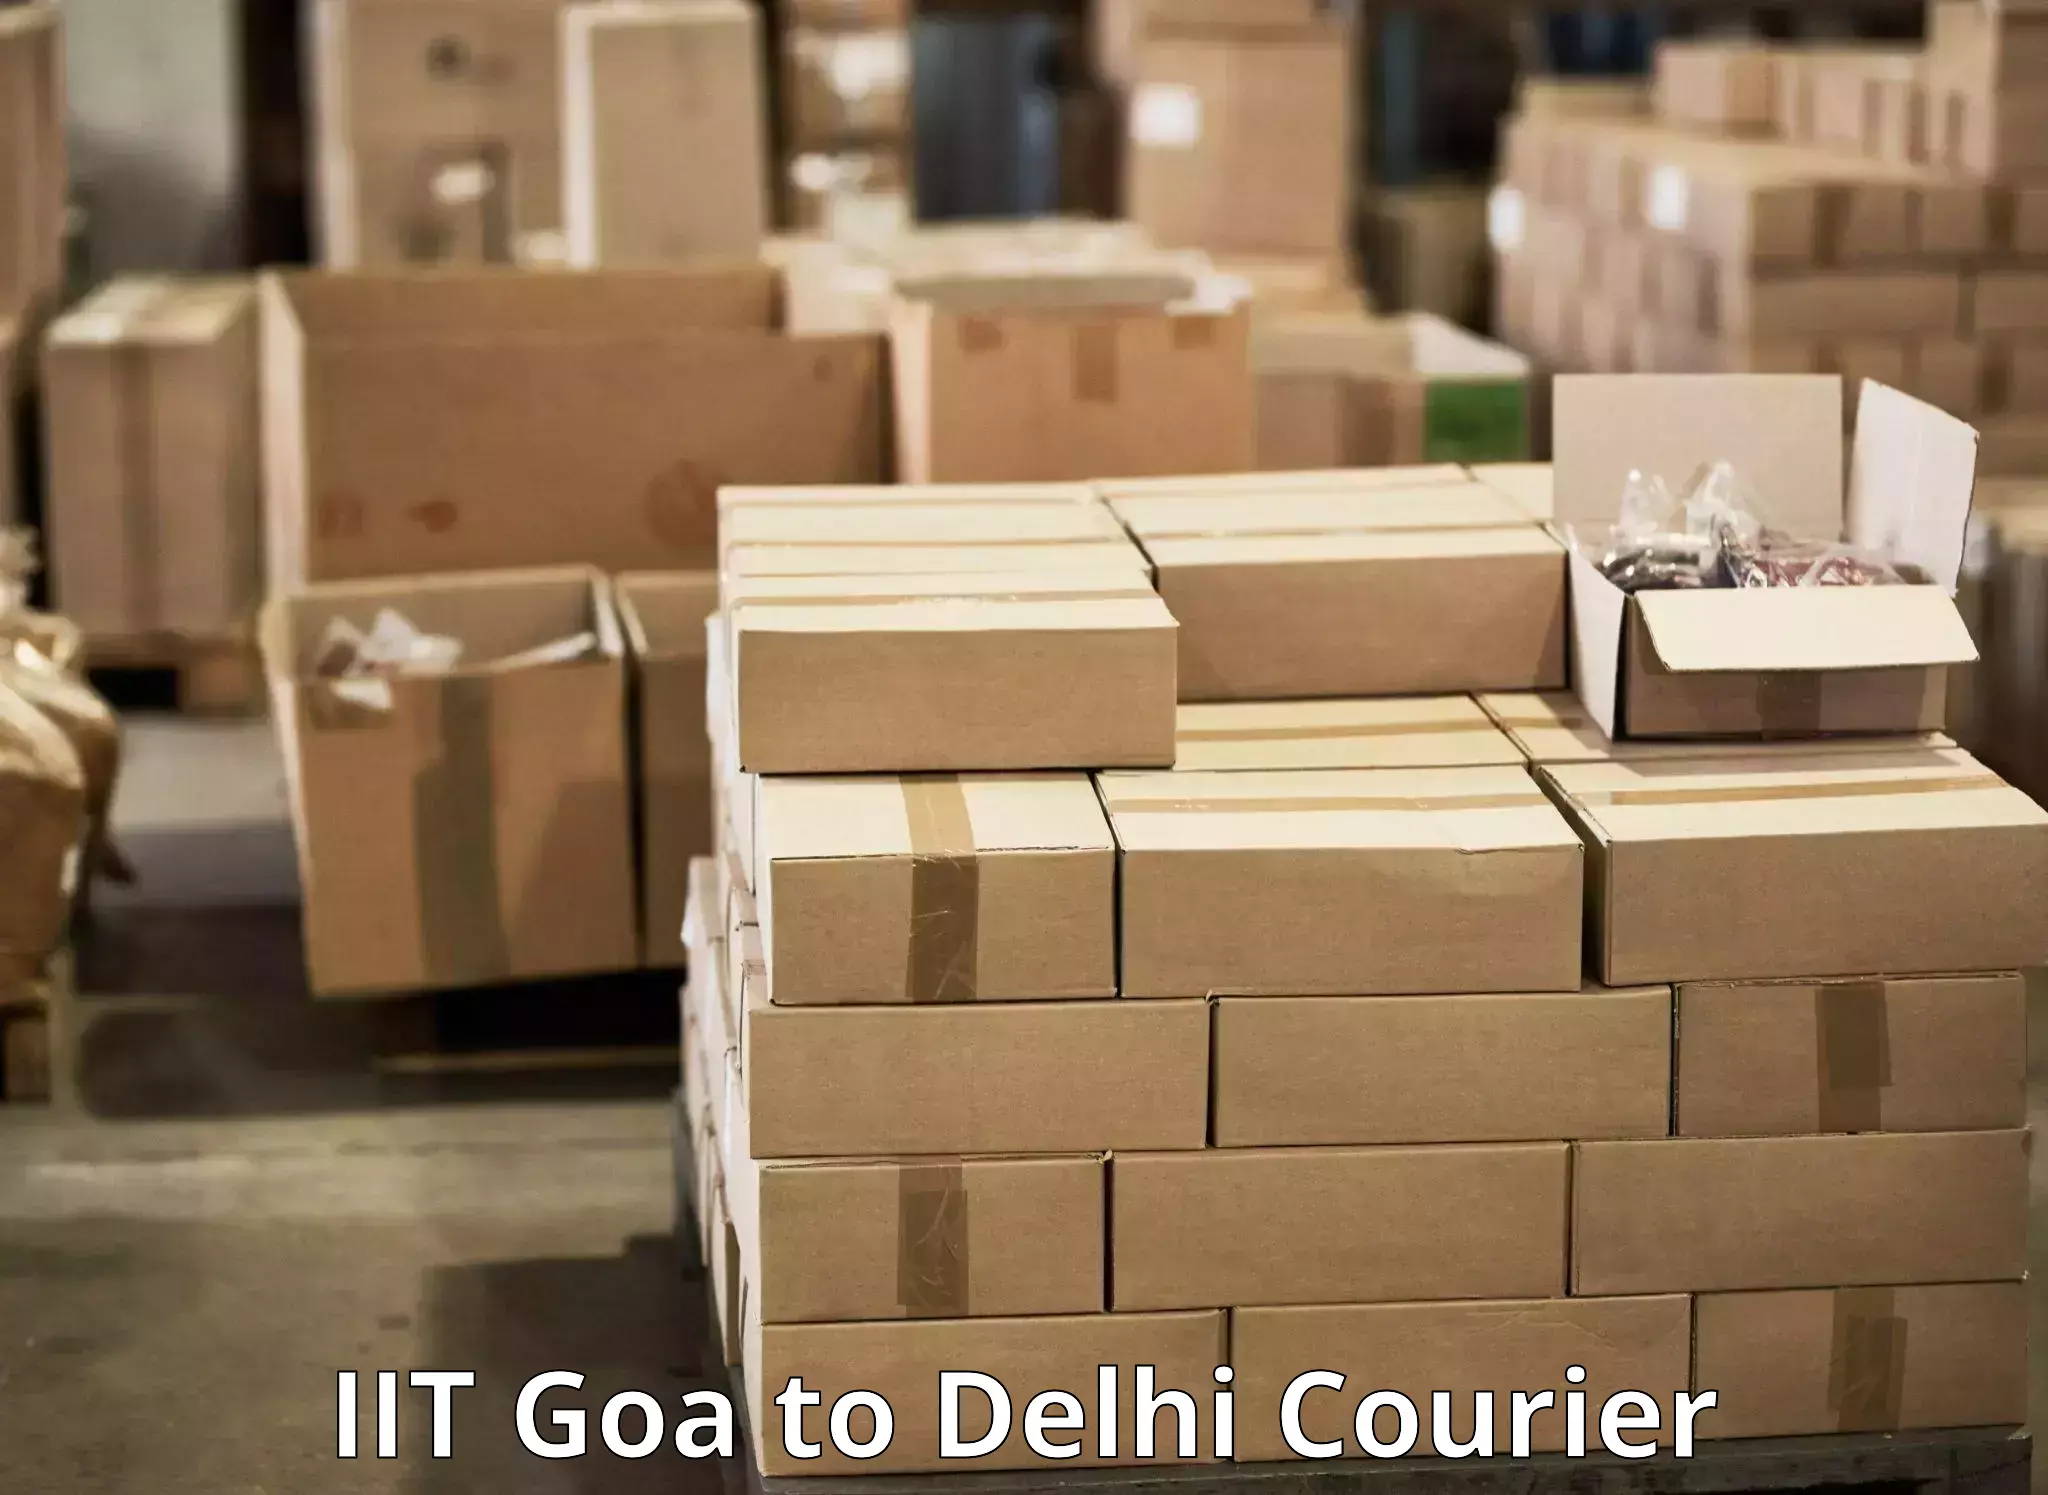 Courier app IIT Goa to Delhi